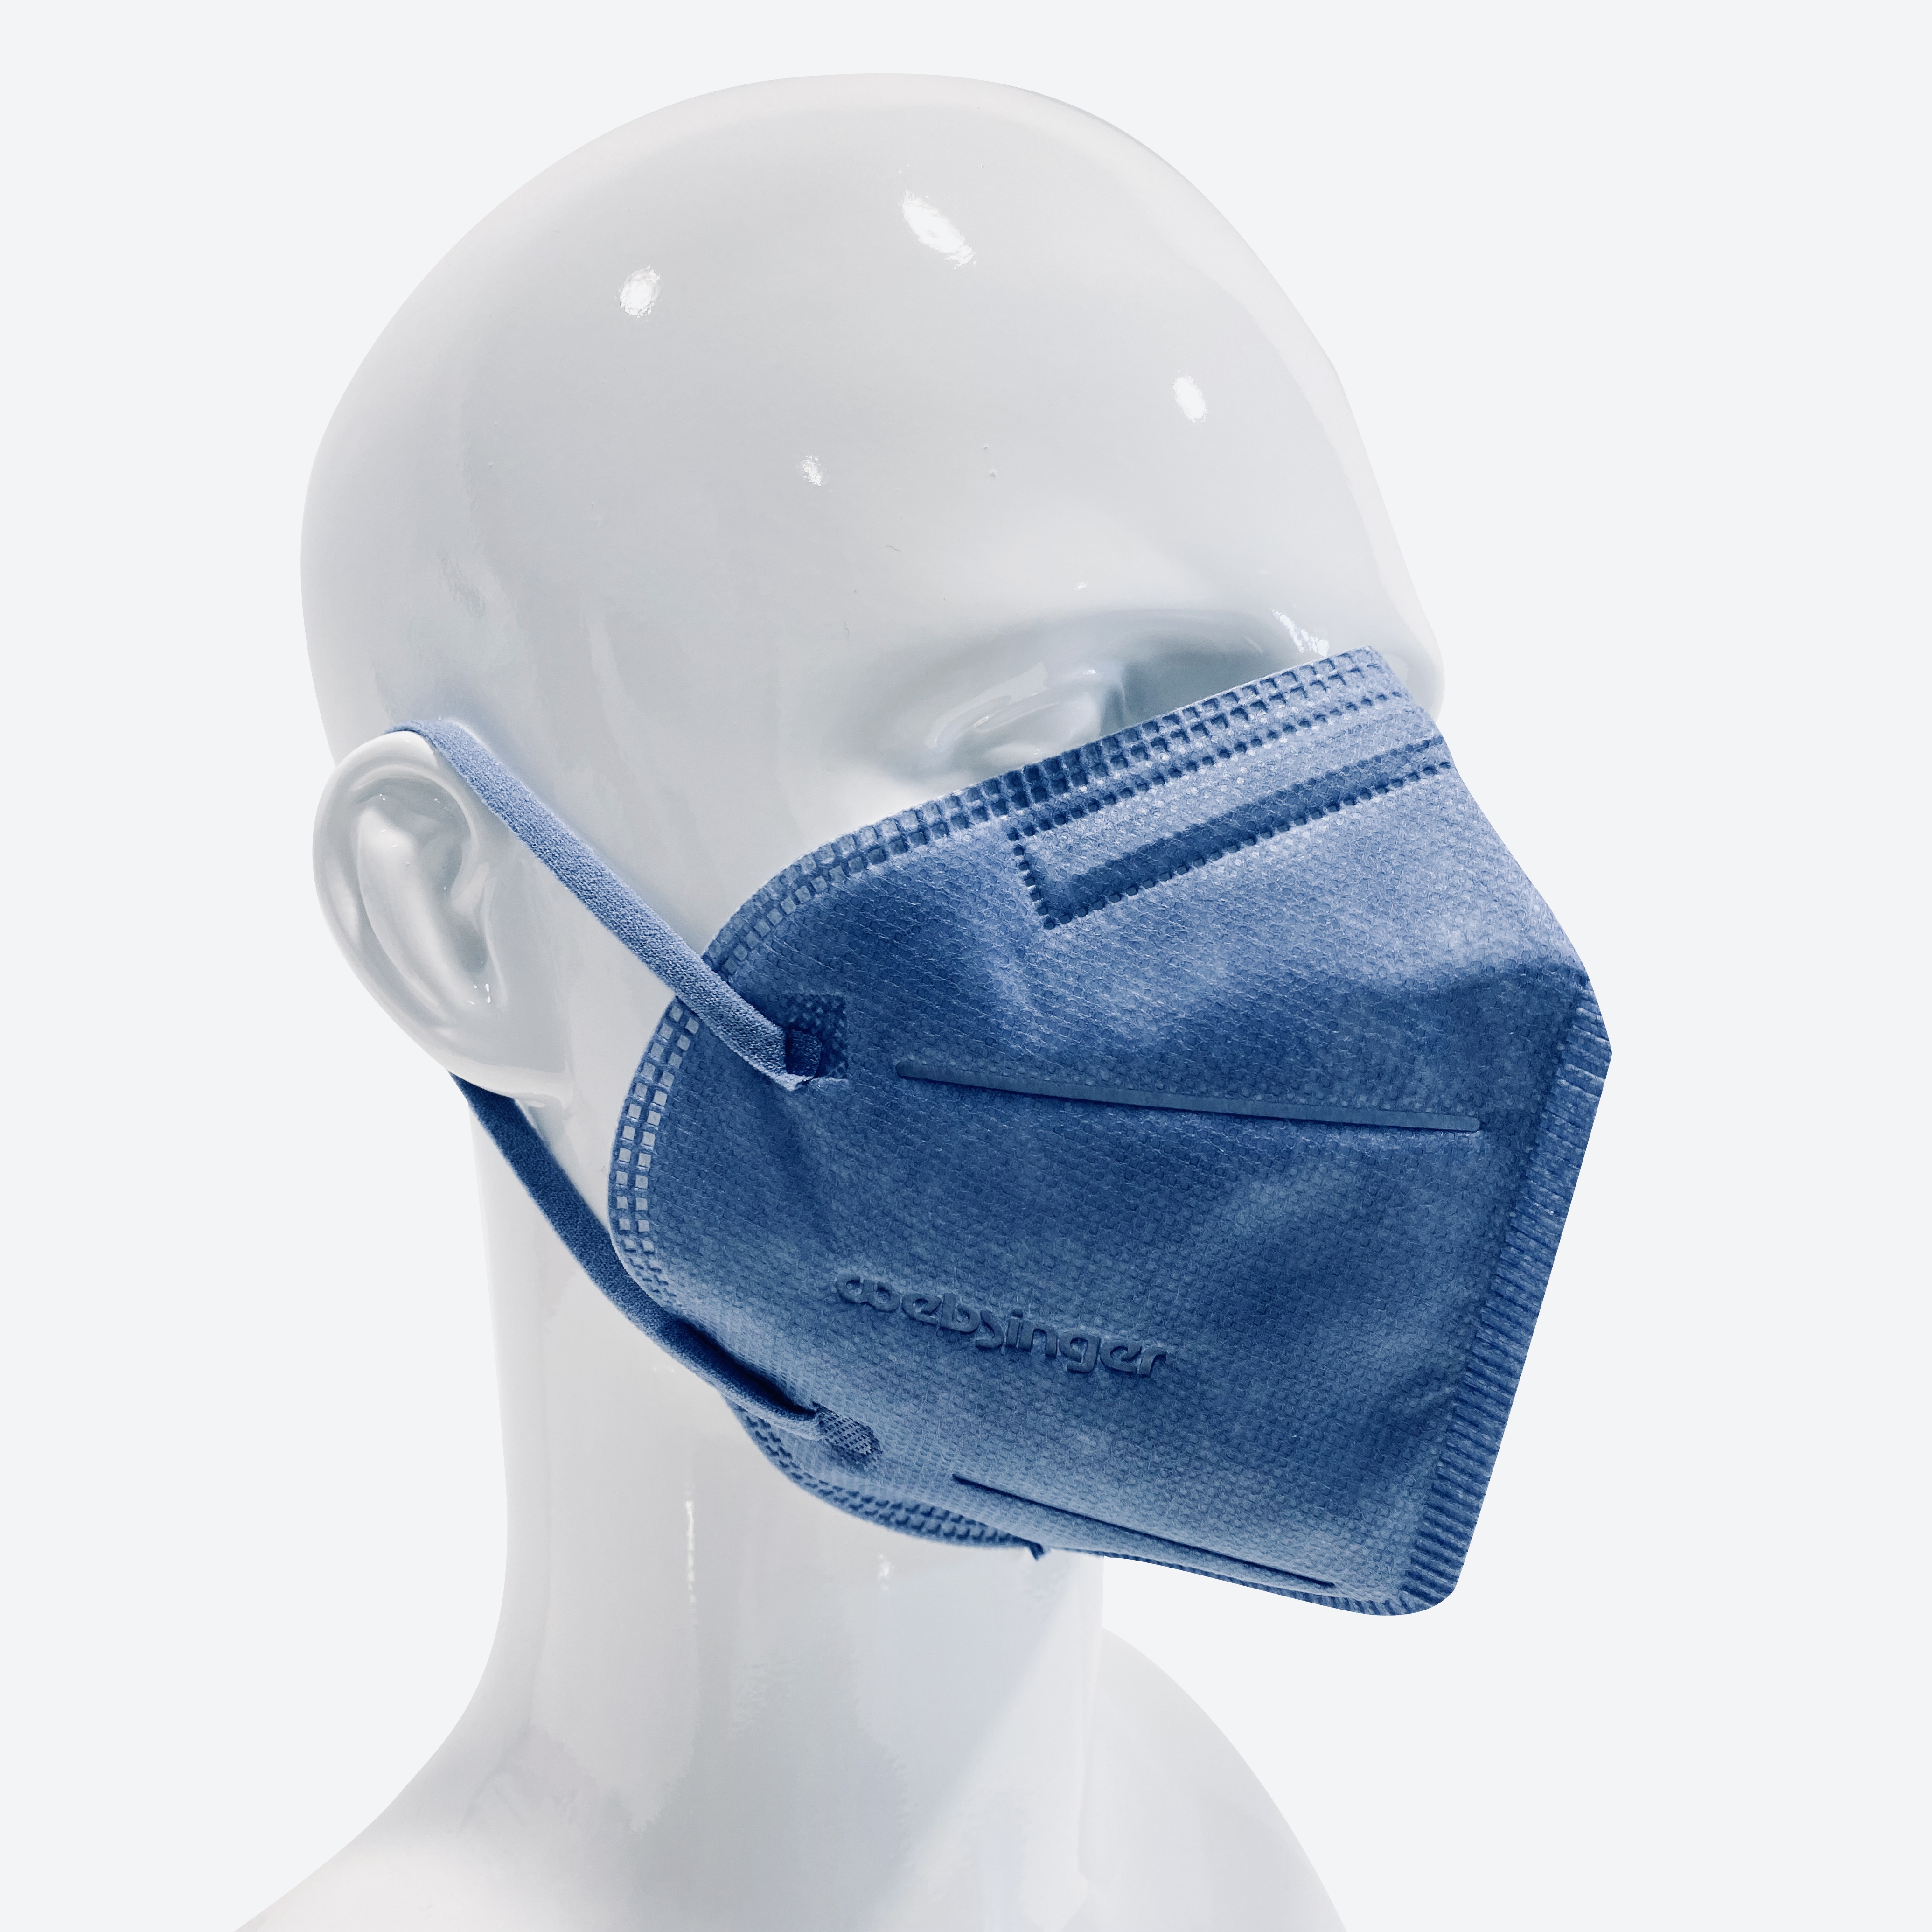 Qualitativ hochwertige FFP2-Schutzmasken -  SKY EDITION 